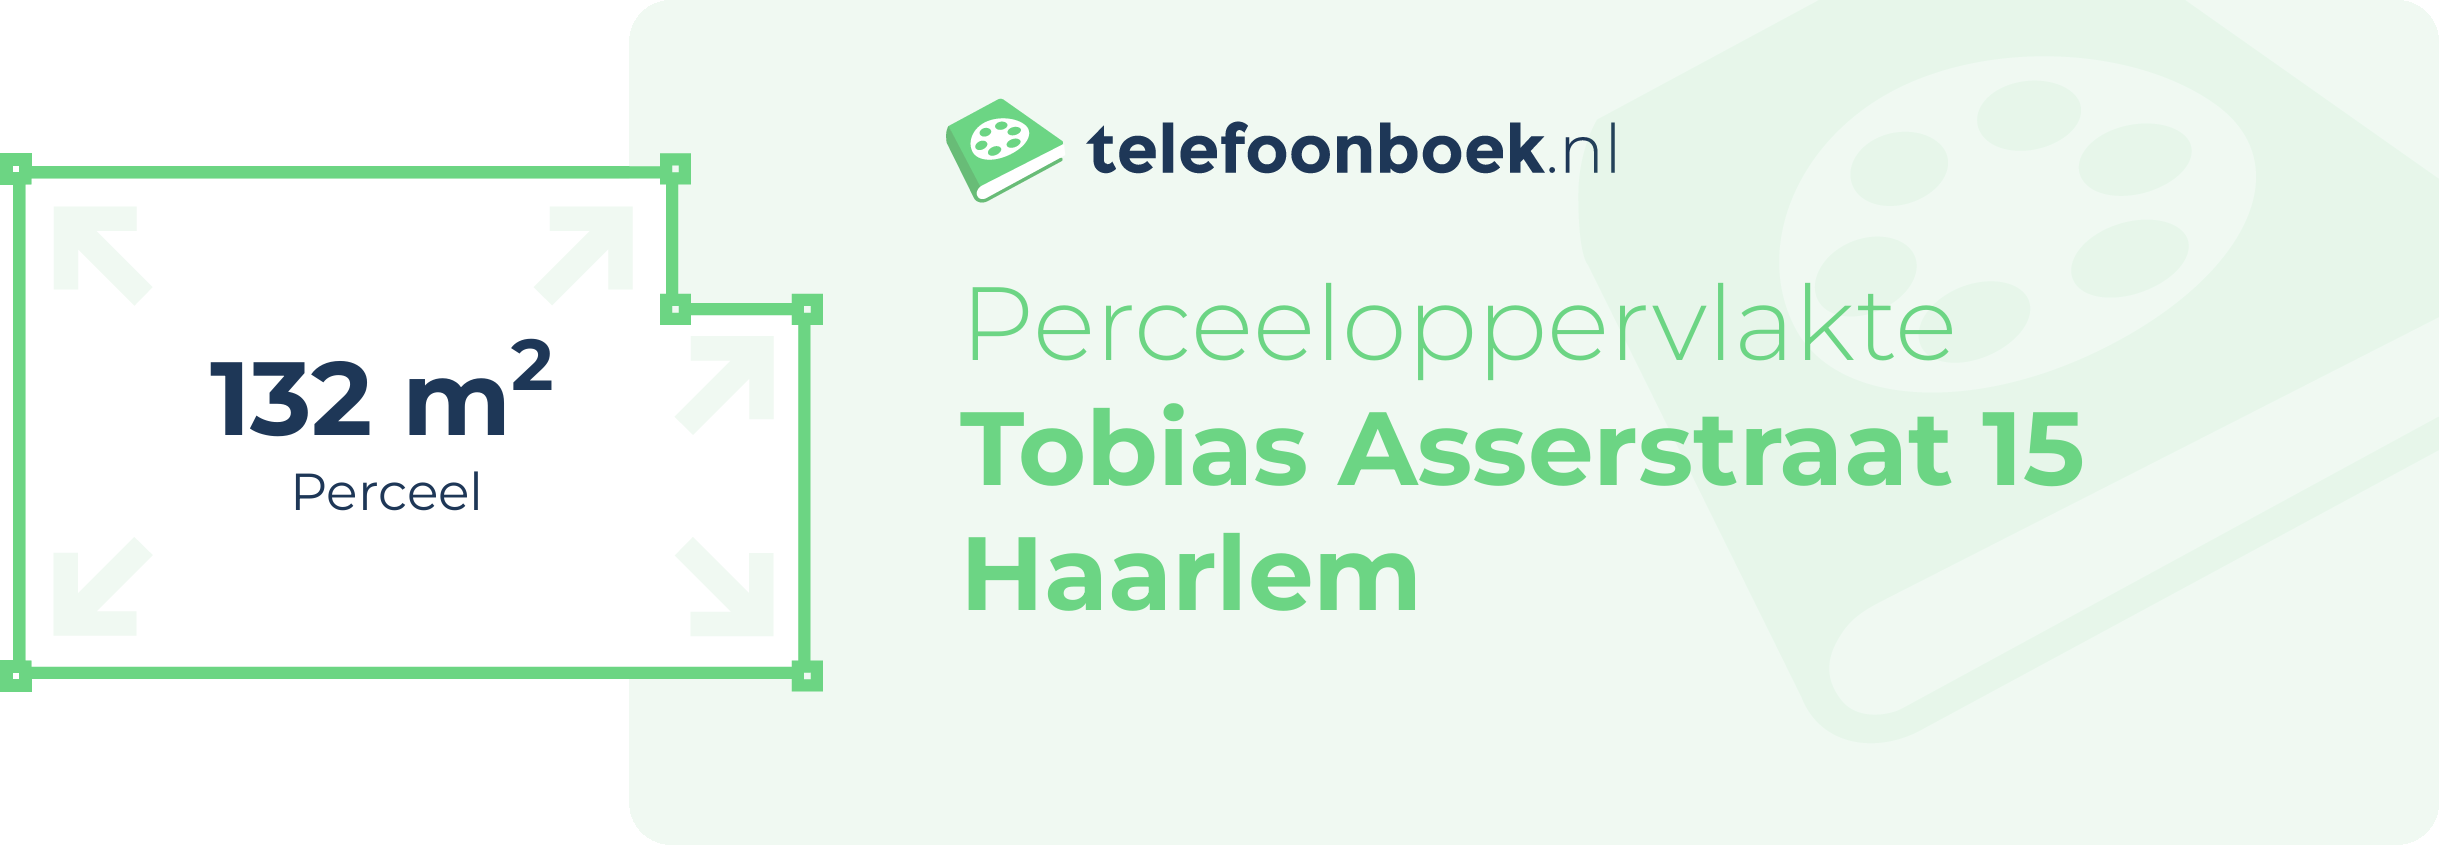 Perceeloppervlakte Tobias Asserstraat 15 Haarlem